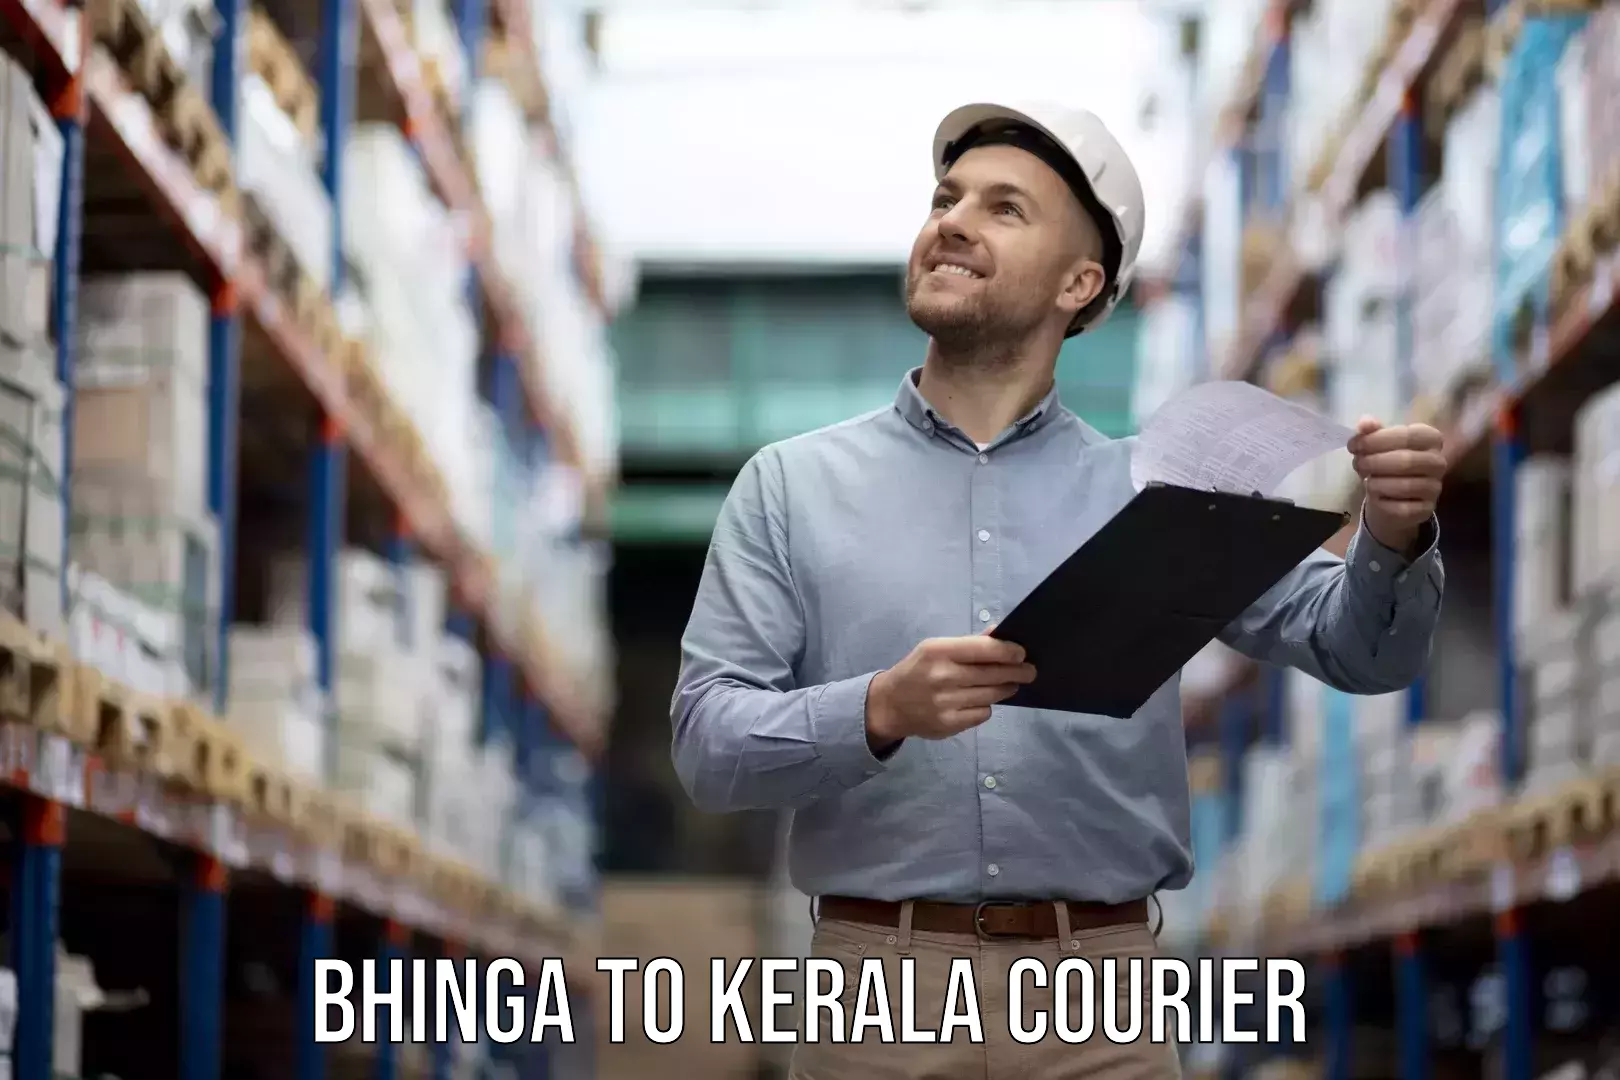 Furniture moving experts Bhinga to Kerala